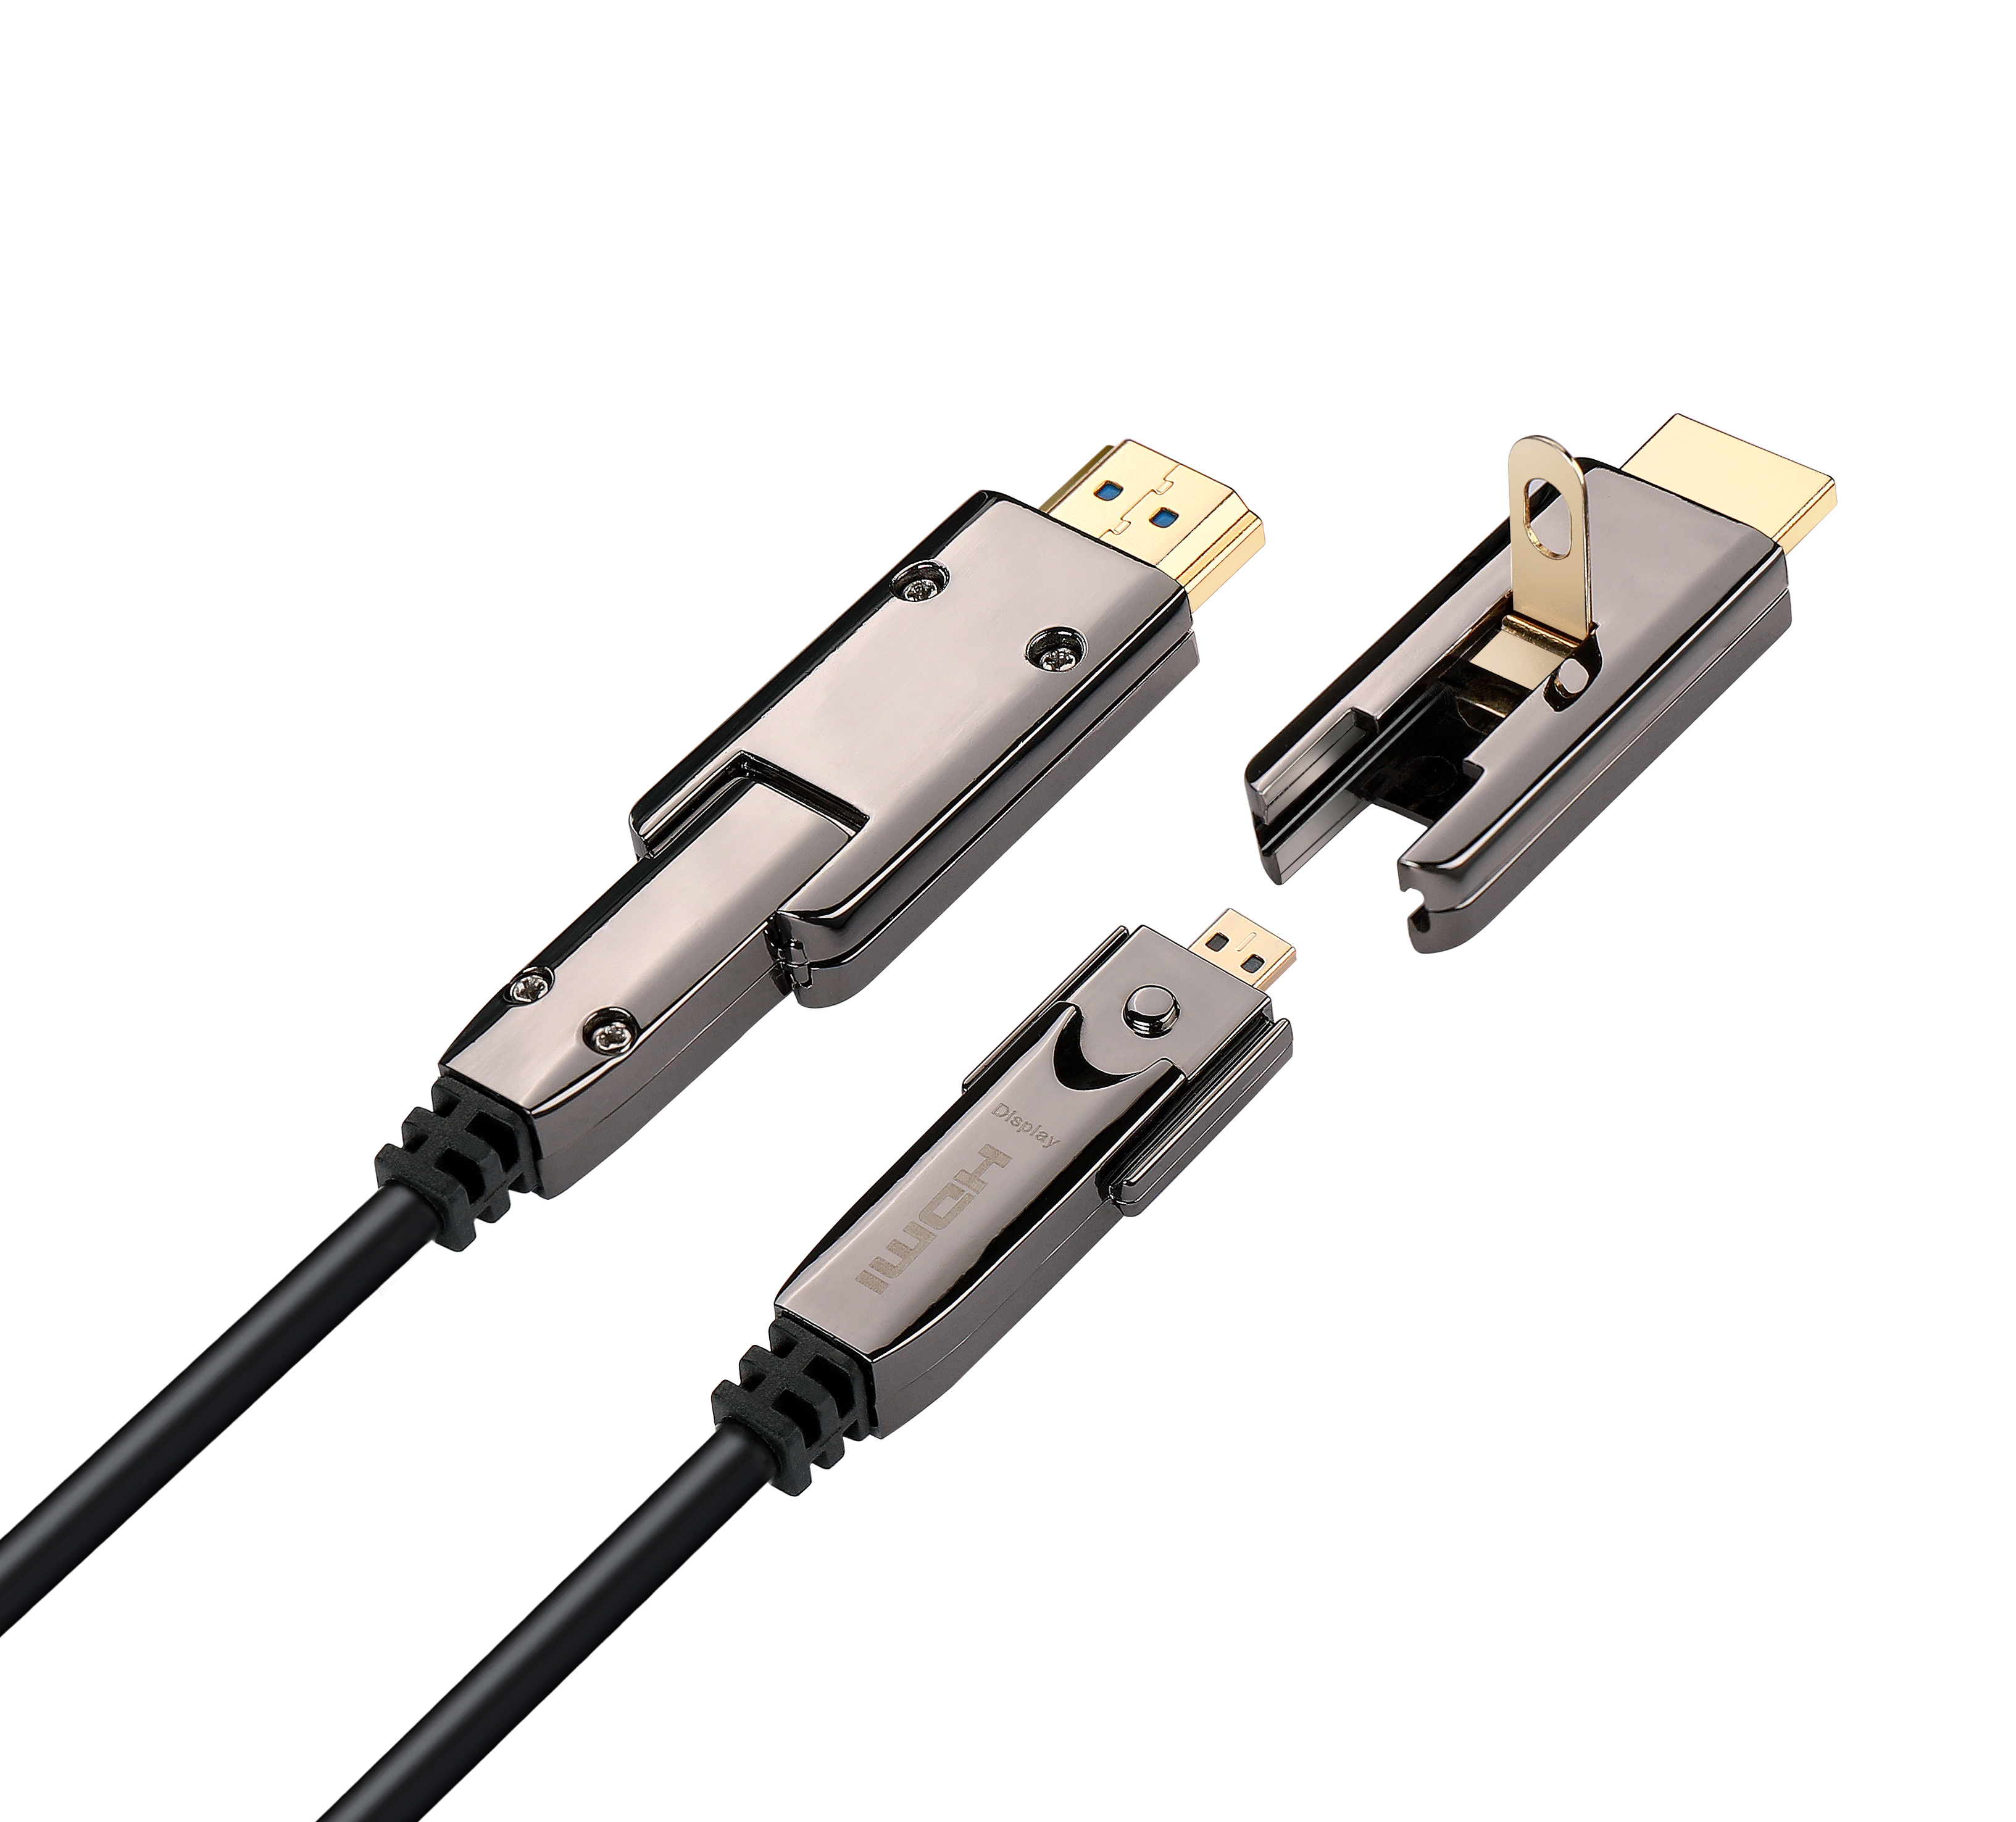 HDMI Cable - HDMF004 Optical Fiber